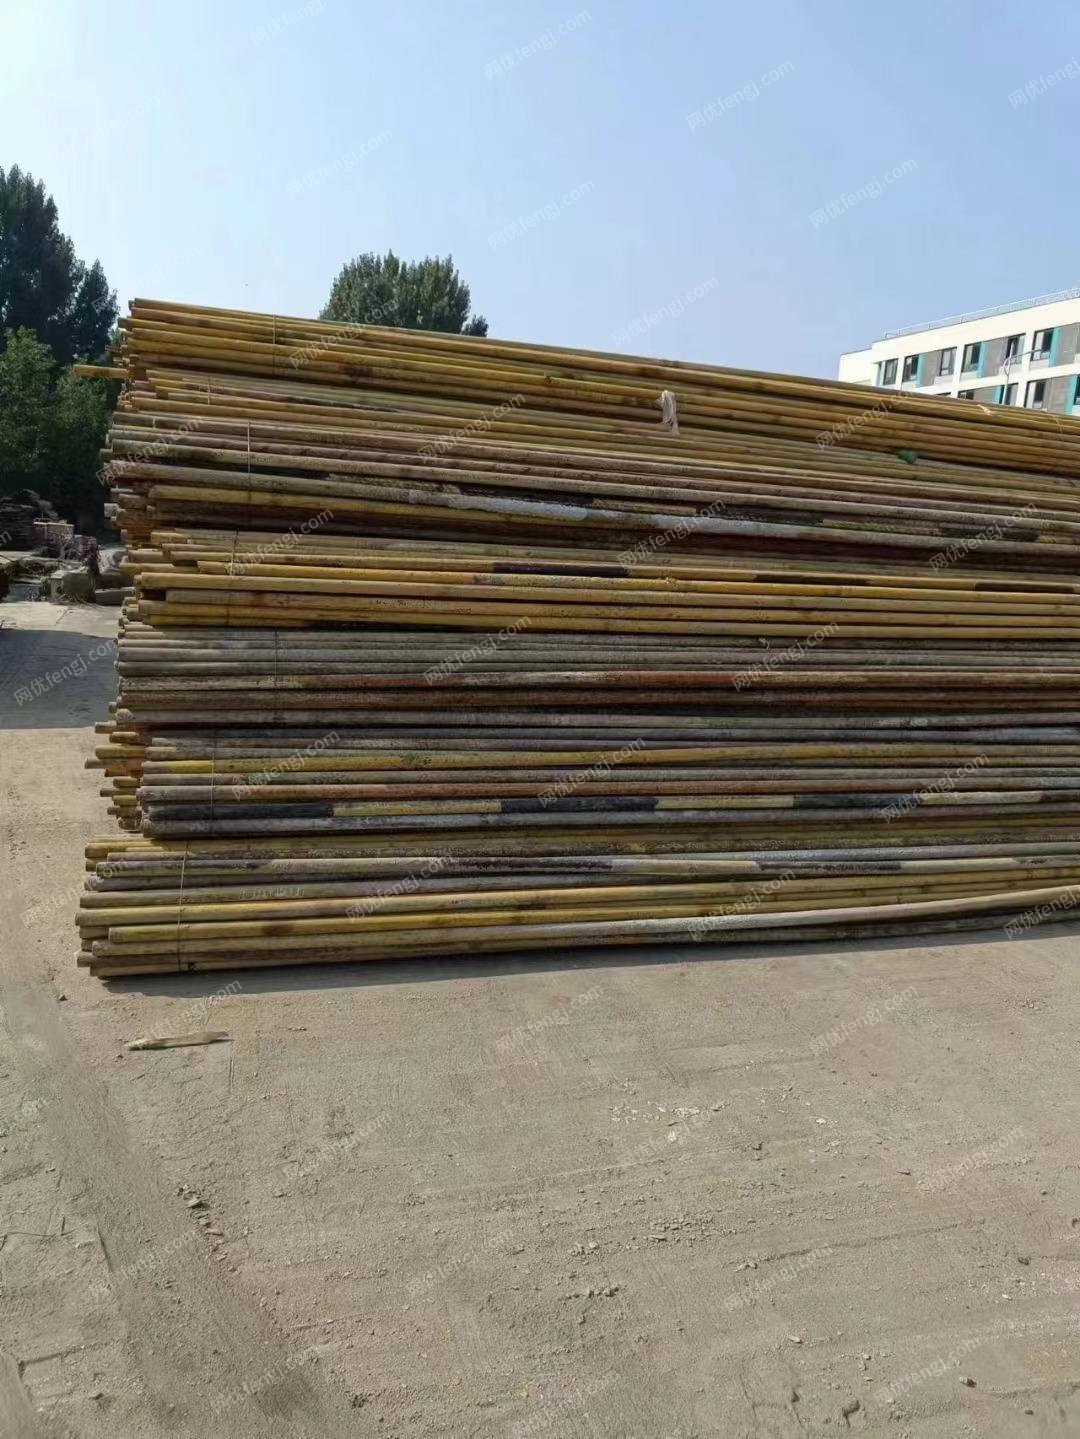 北京出售6米架子管1100根